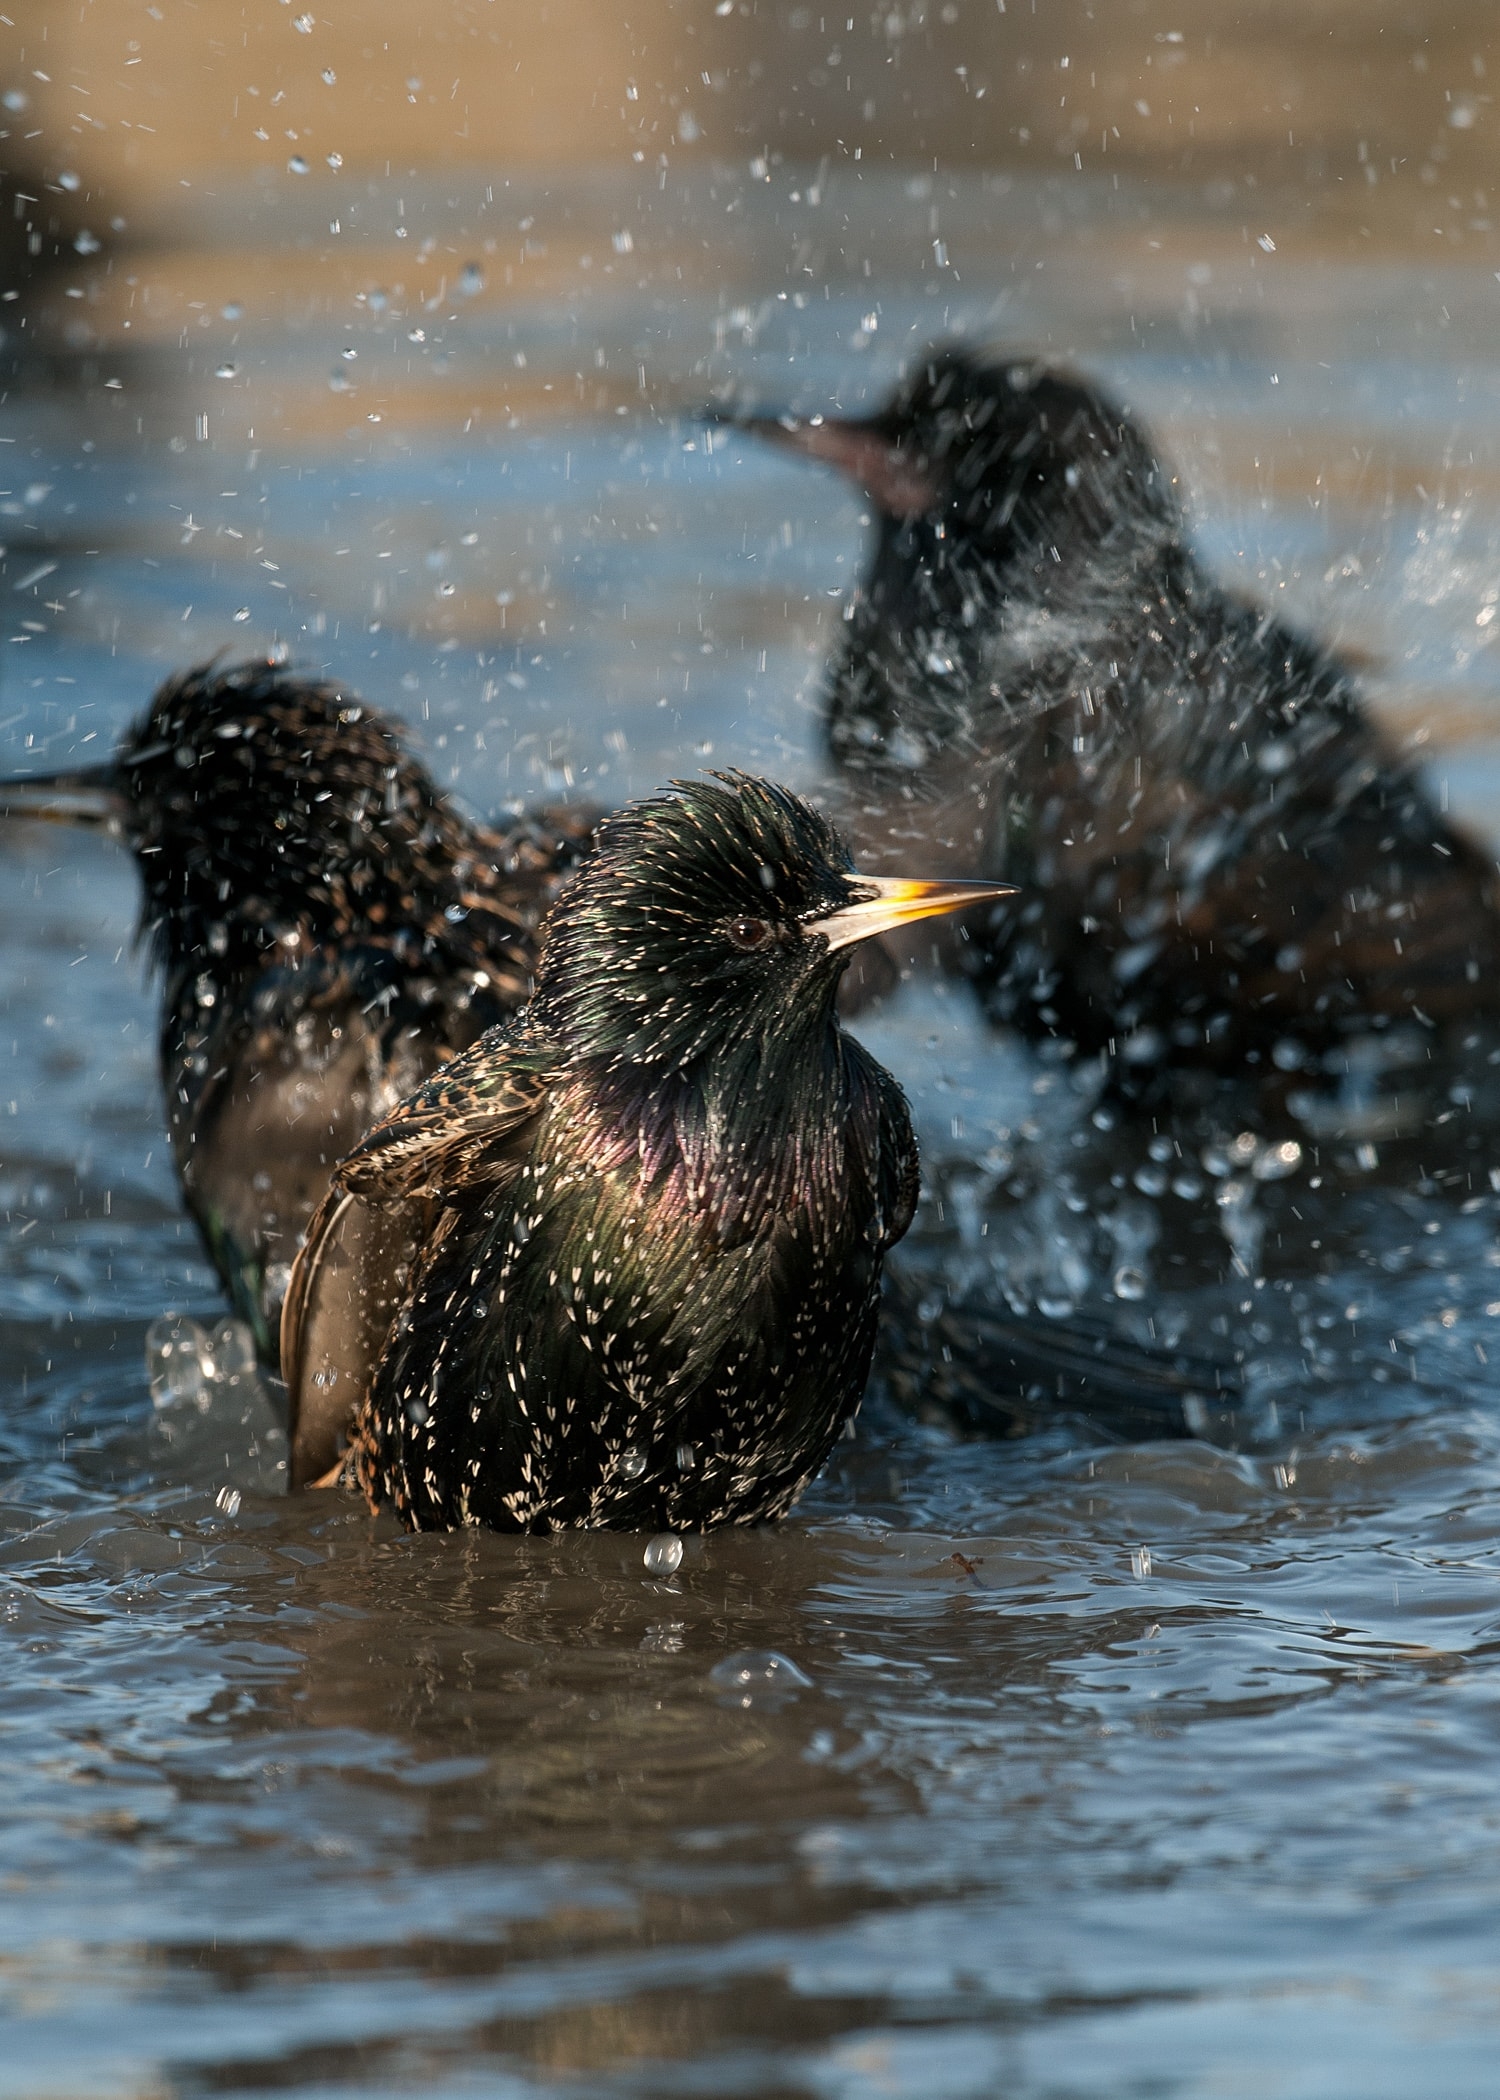 Starlings in water